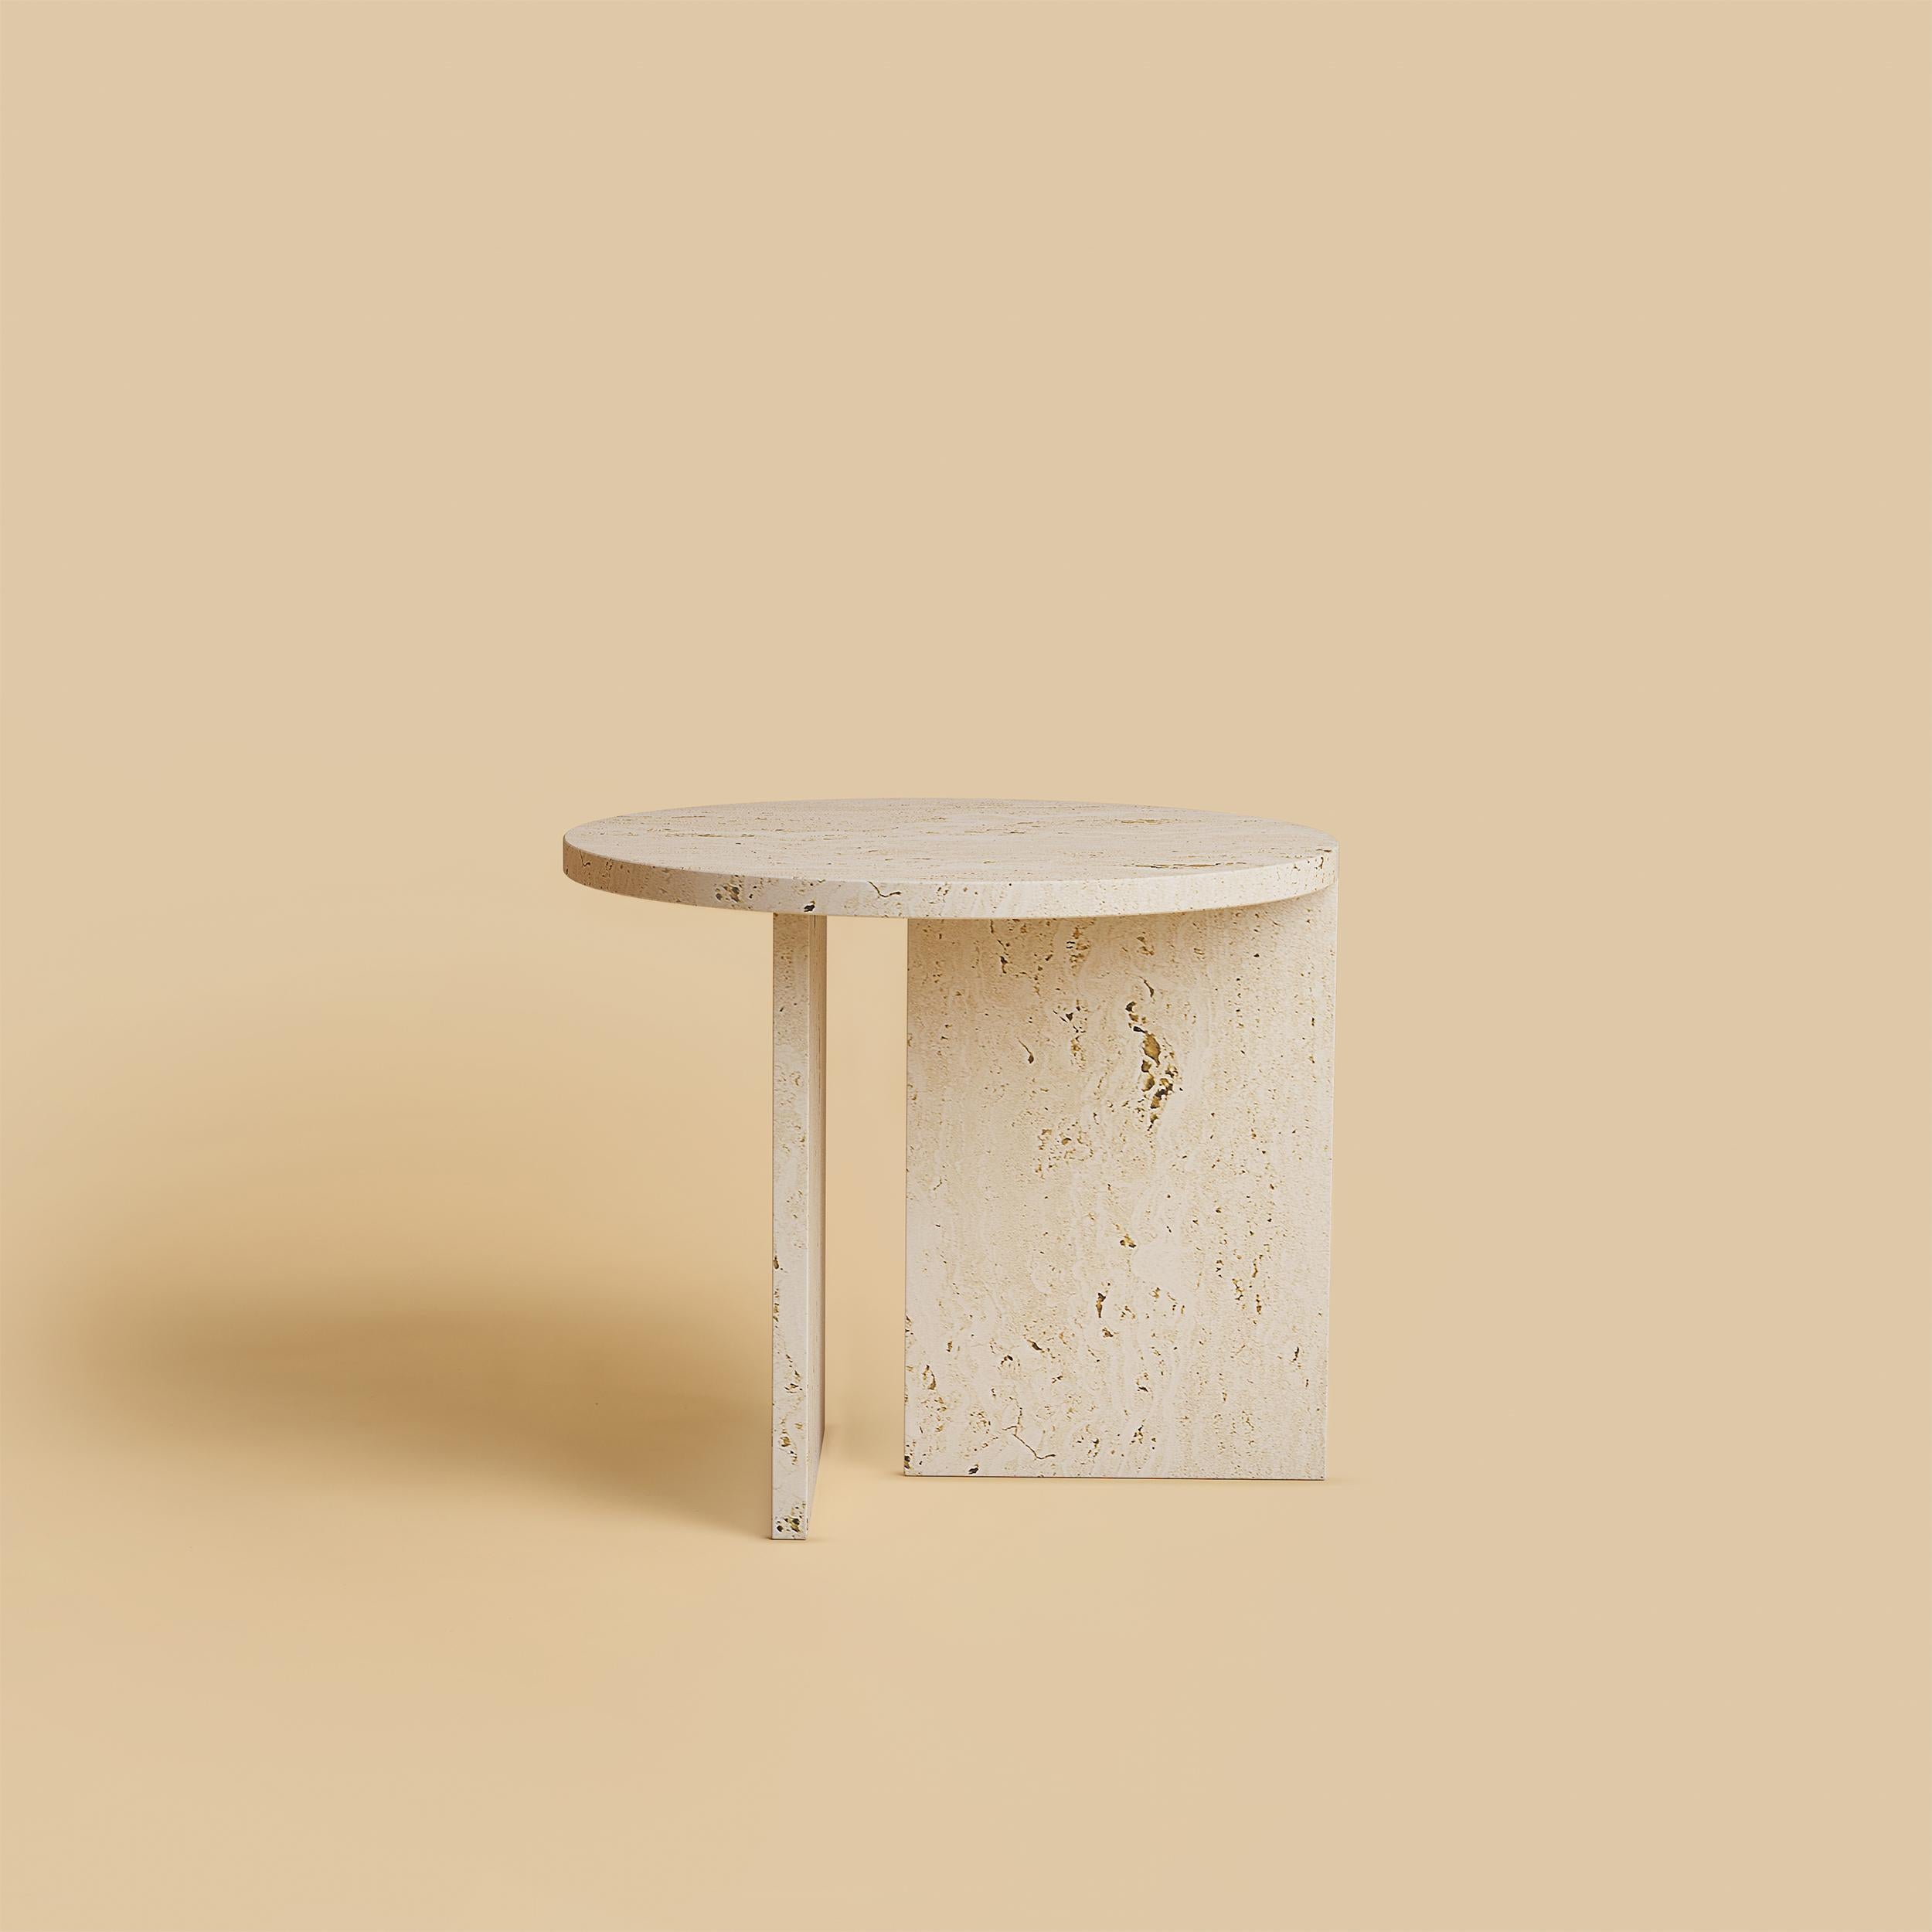 italien Table basse circulaire en marbre romain et travertin, fabriquée en Italie en vente